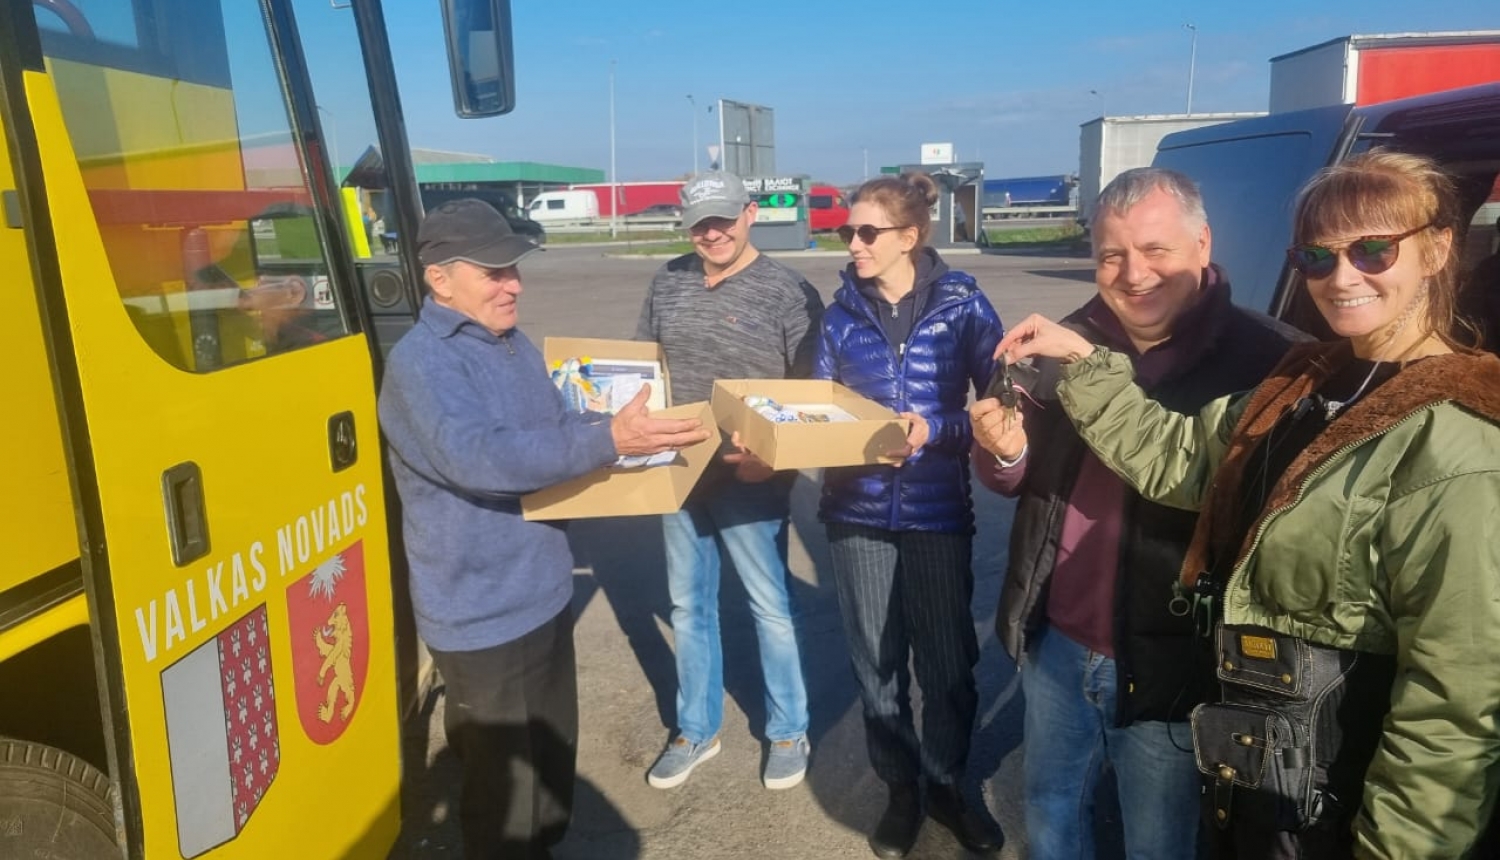 Valkas novada pašvaldības dāvinātais autobuss ar ziedojumu kravu sasniedzis galamērķi